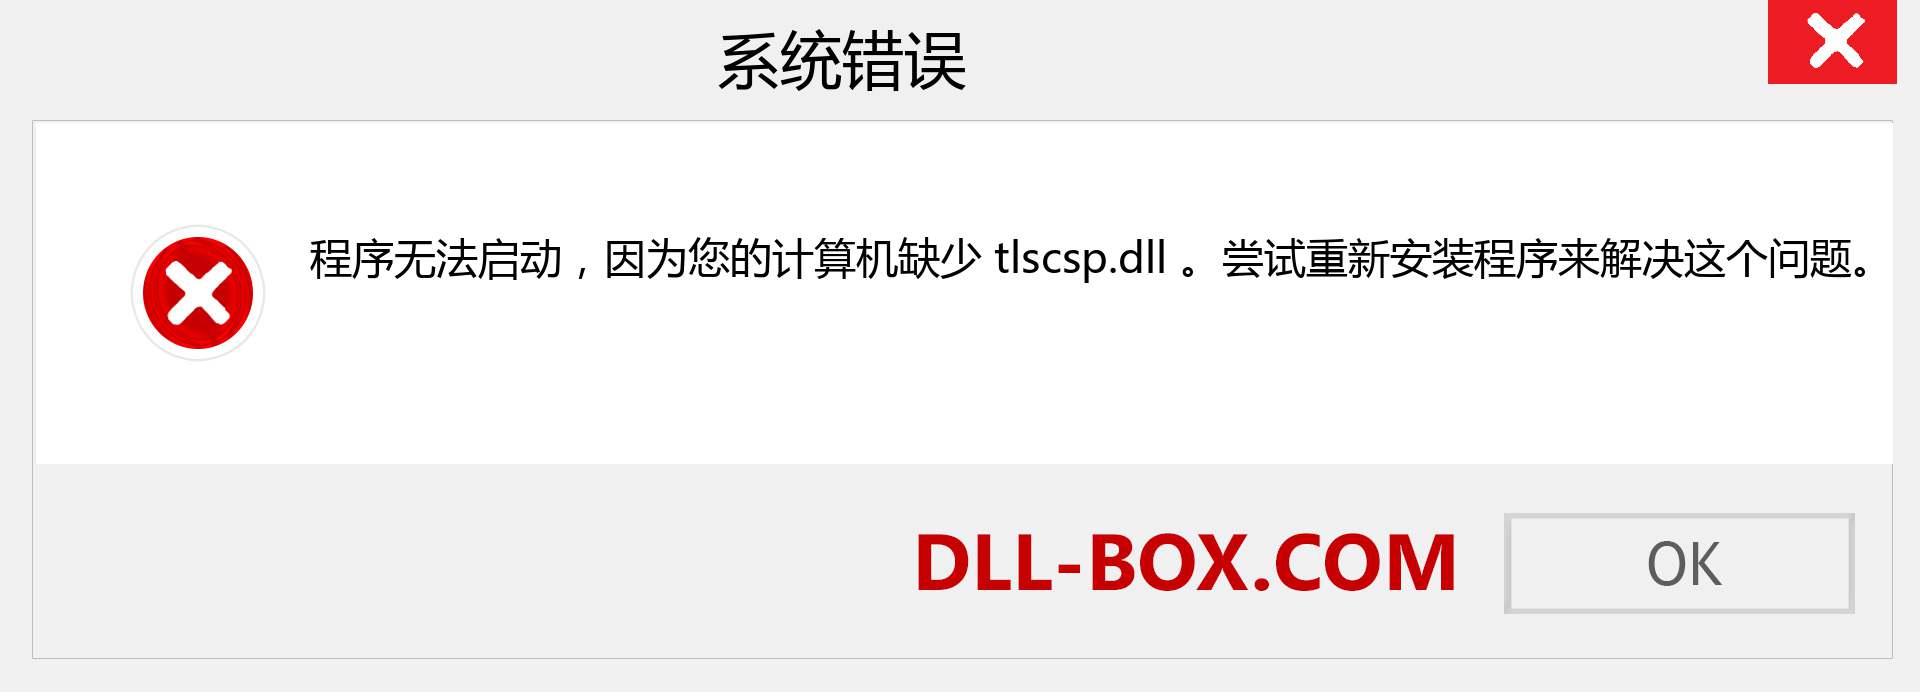 tlscsp.dll 文件丢失？。 适用于 Windows 7、8、10 的下载 - 修复 Windows、照片、图像上的 tlscsp dll 丢失错误